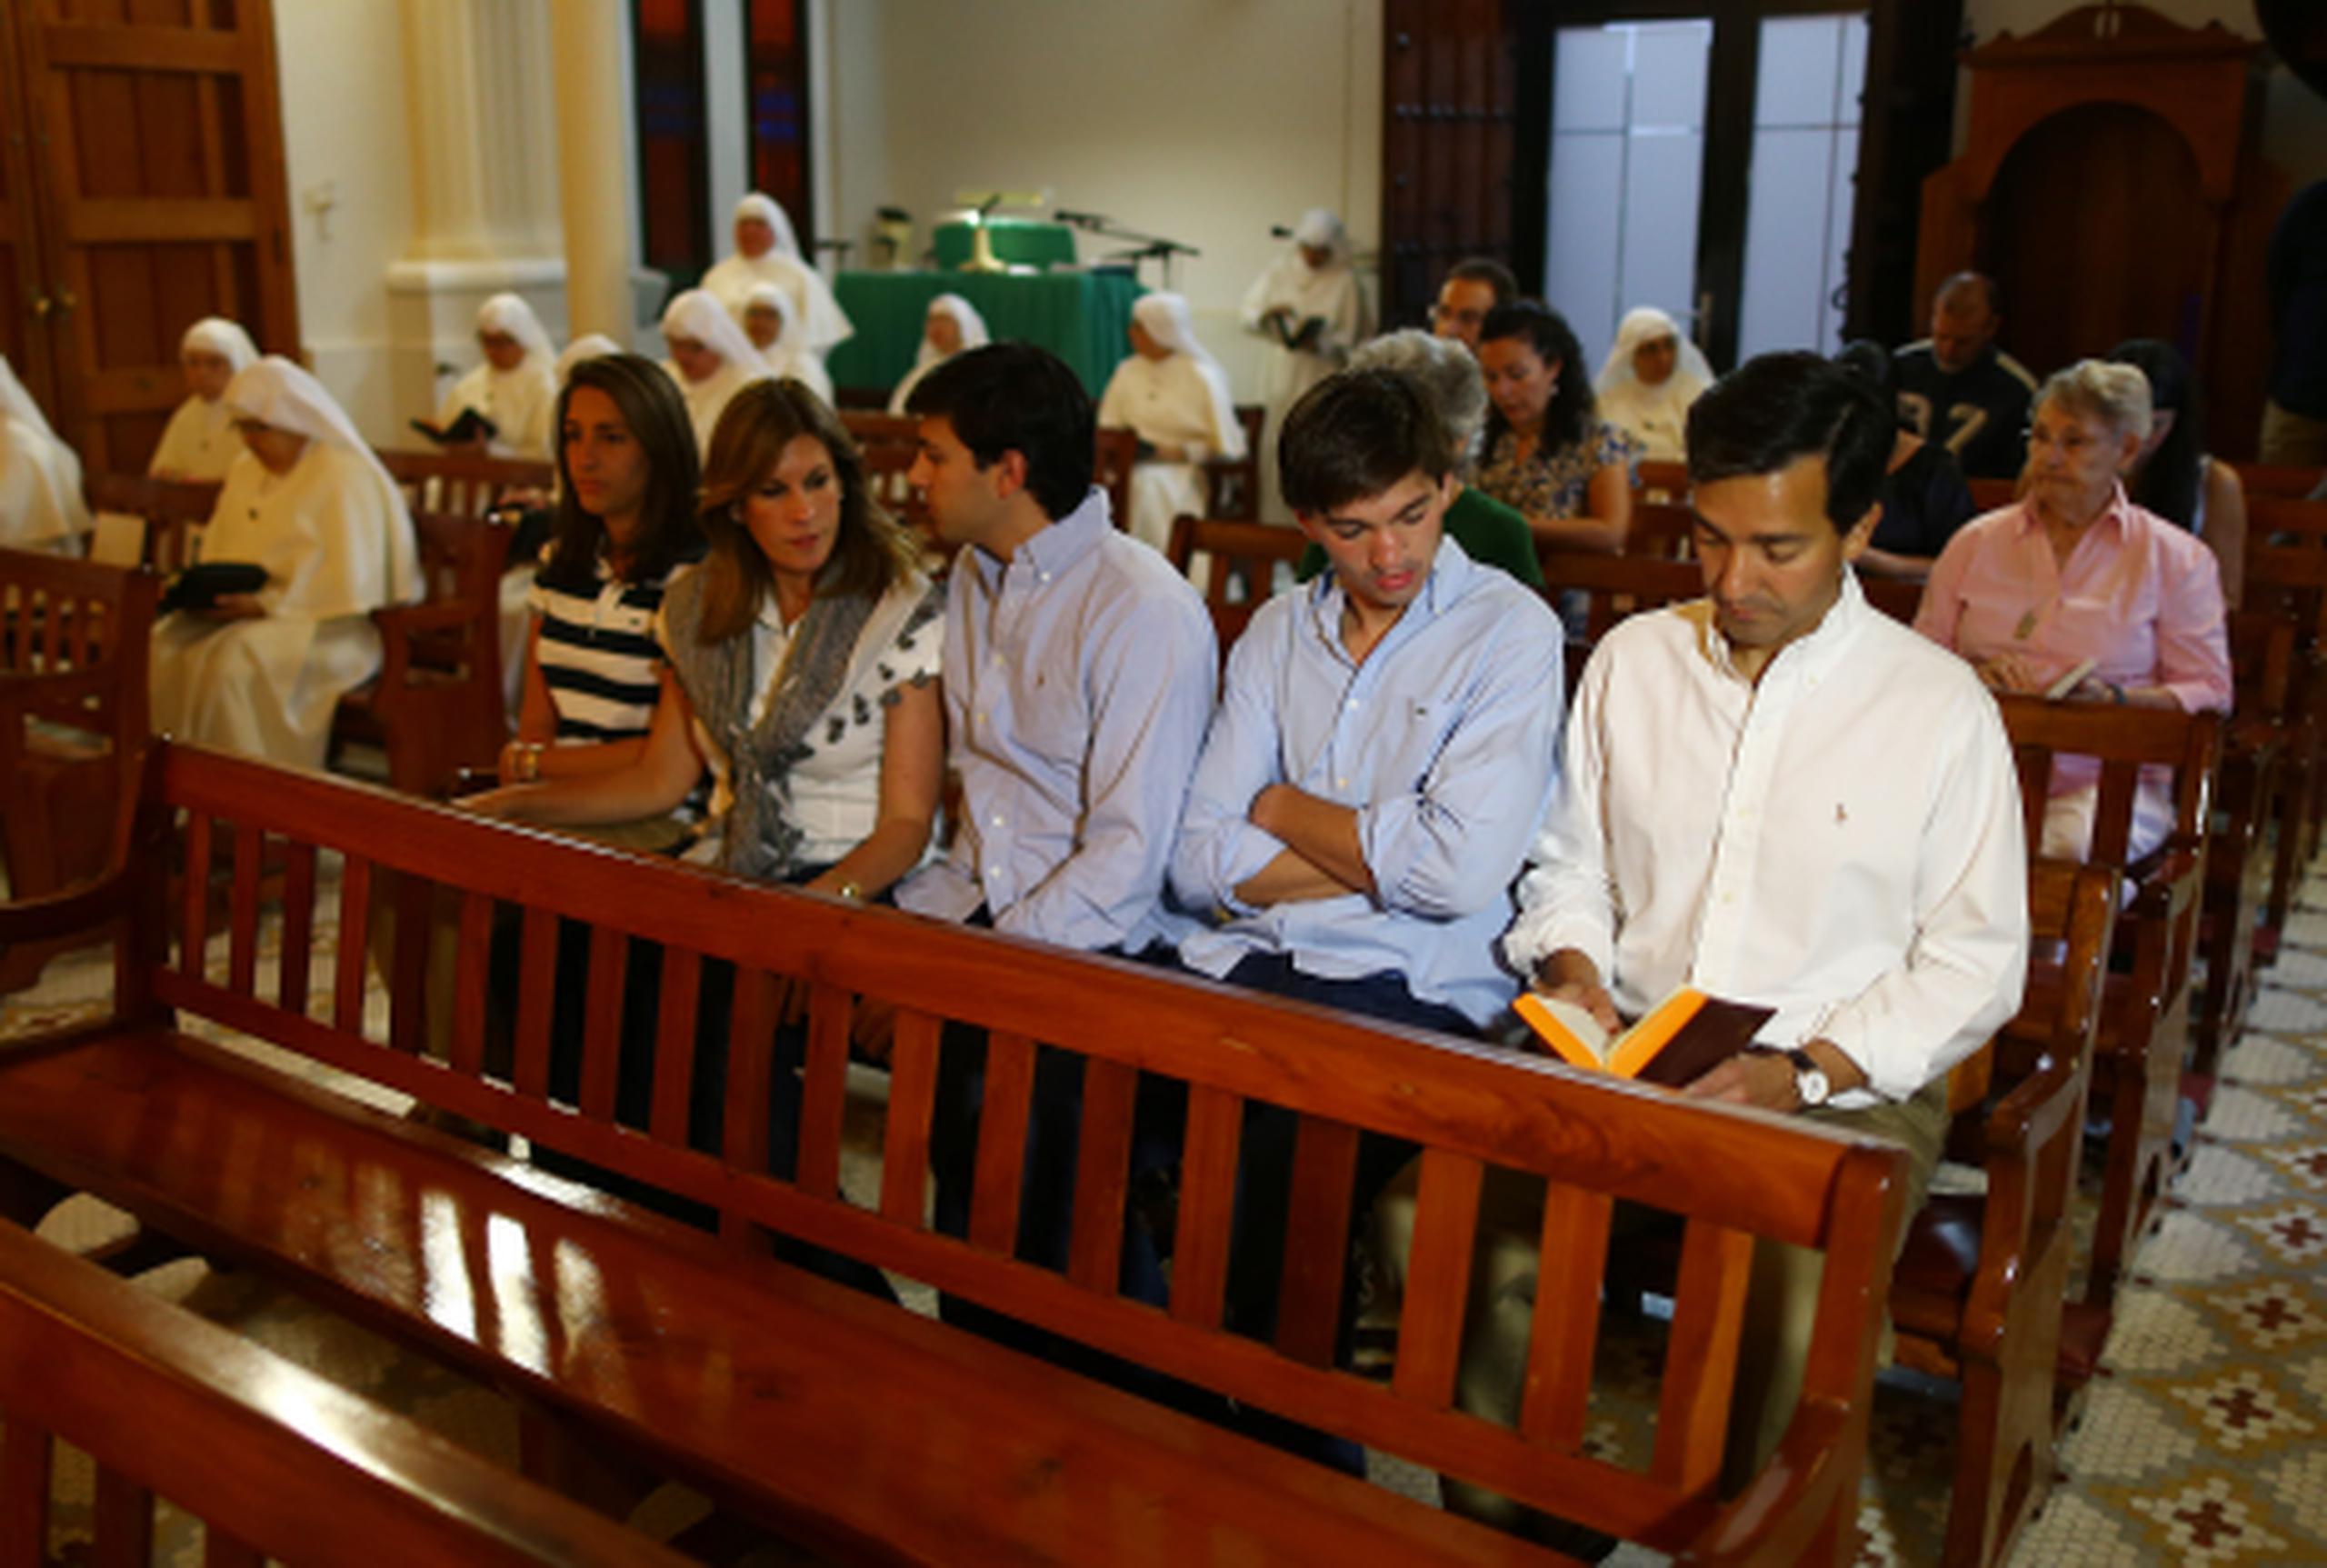 El gobernador, Luis G. Fortuño, asistió a misa acompañado por su esposa Lucé Vela y sus hijos Roberto, Guillermo Luis y María Luisa.(jose.madera@gfrmedia.com)